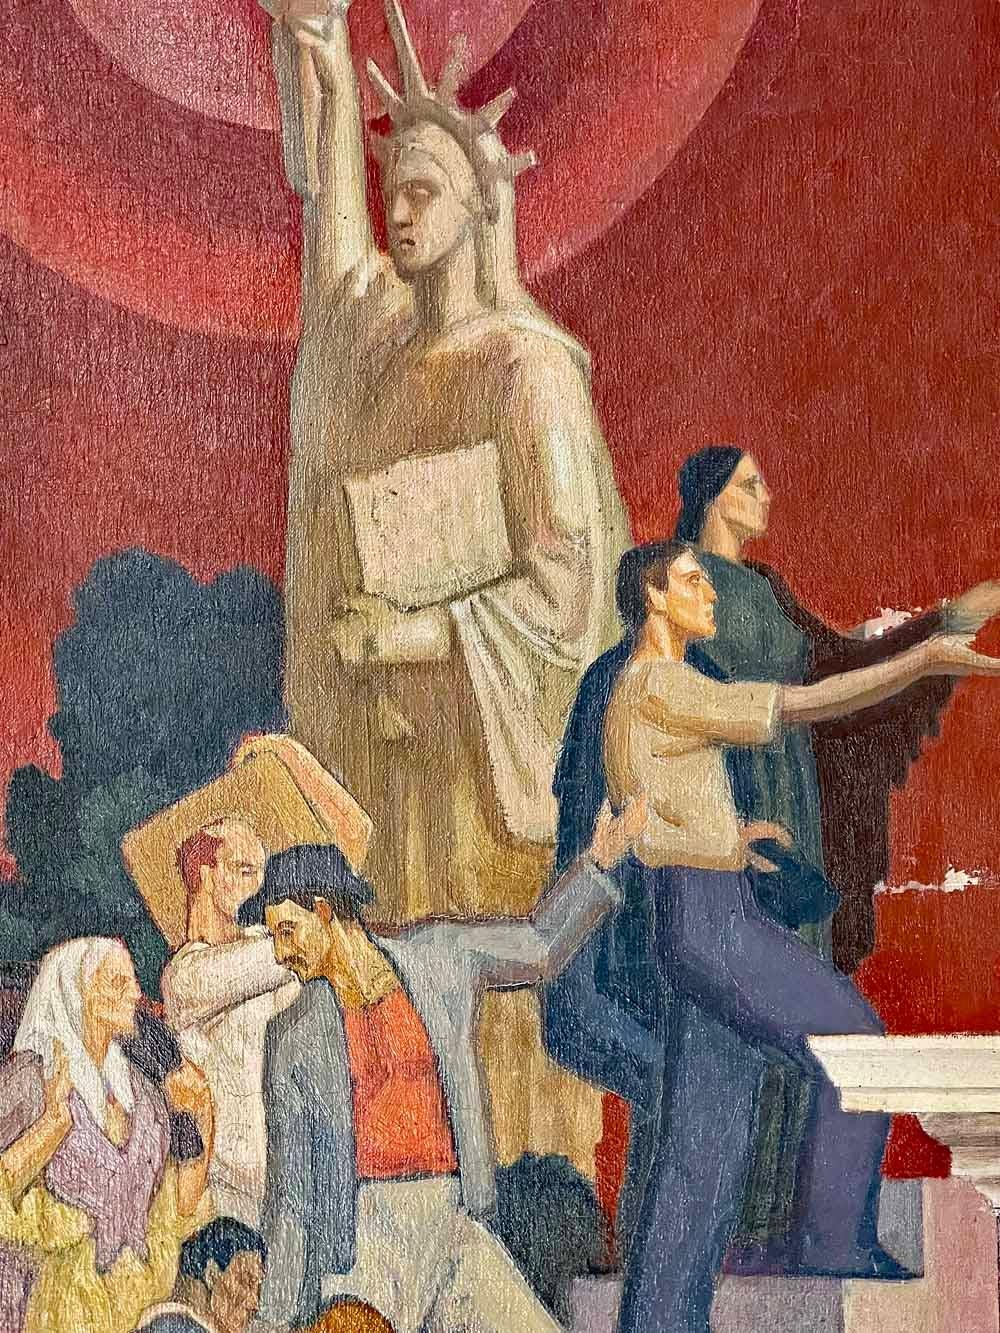 Cette importante et très rare étude murale, exécutée à l'huile sur toile, a été peinte par Dunbar Beck dans les années 1930, manifestement pour un projet qui n'a jamais été achevé. Le tableau représente, à la manière classique de la WPA, un ensemble